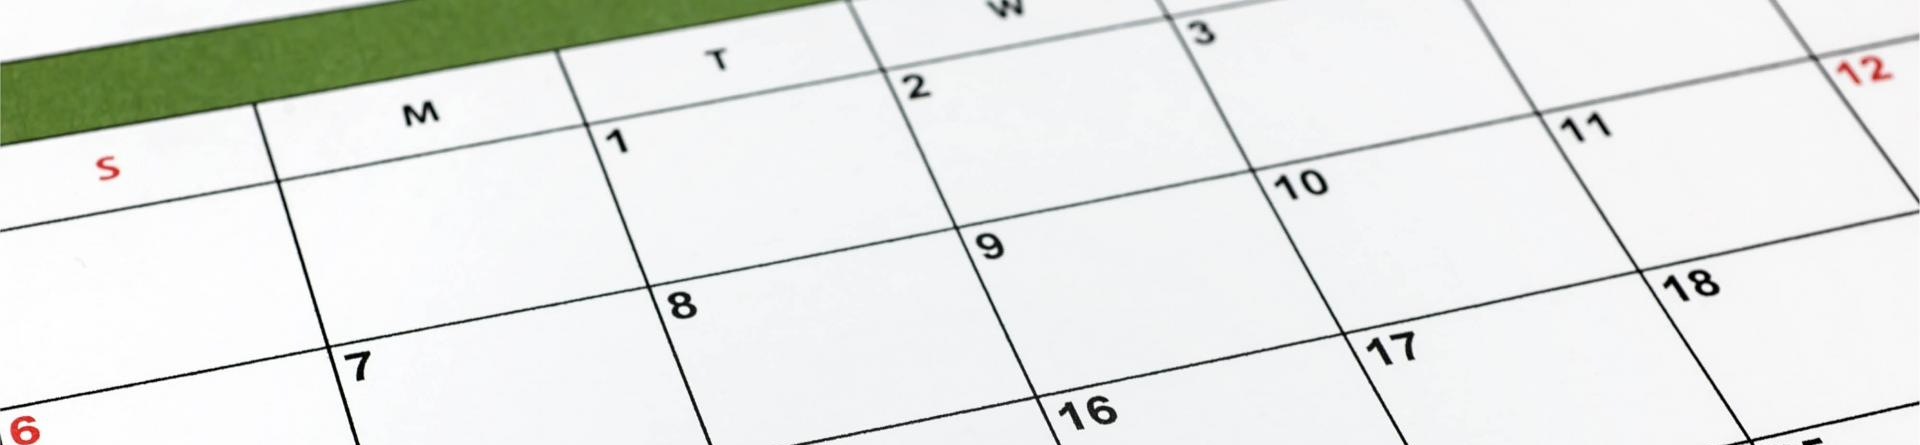 Stock photo of a calendar